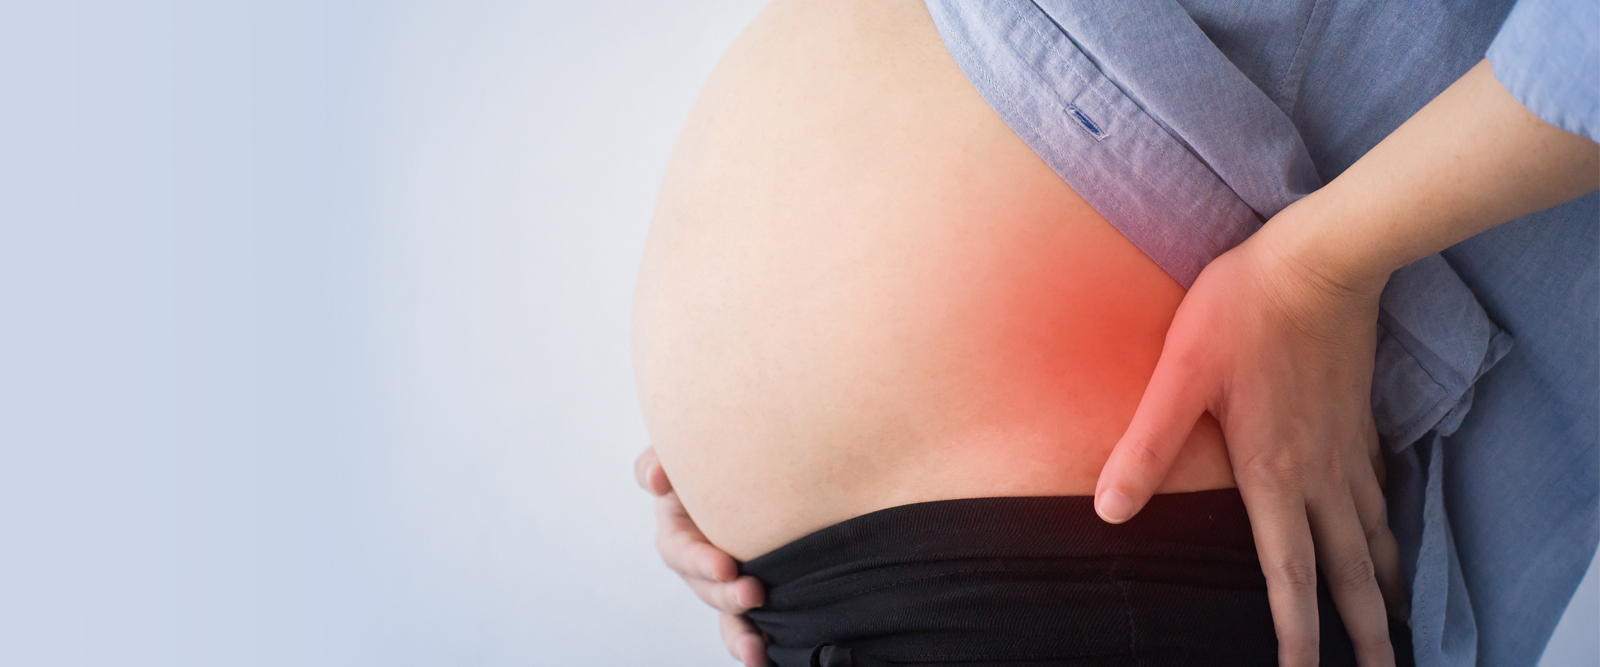 Espectador extraño en cualquier momento Sufre de dolor de espalda relacionado con el embarazo? Estos consejos le  ayudarán